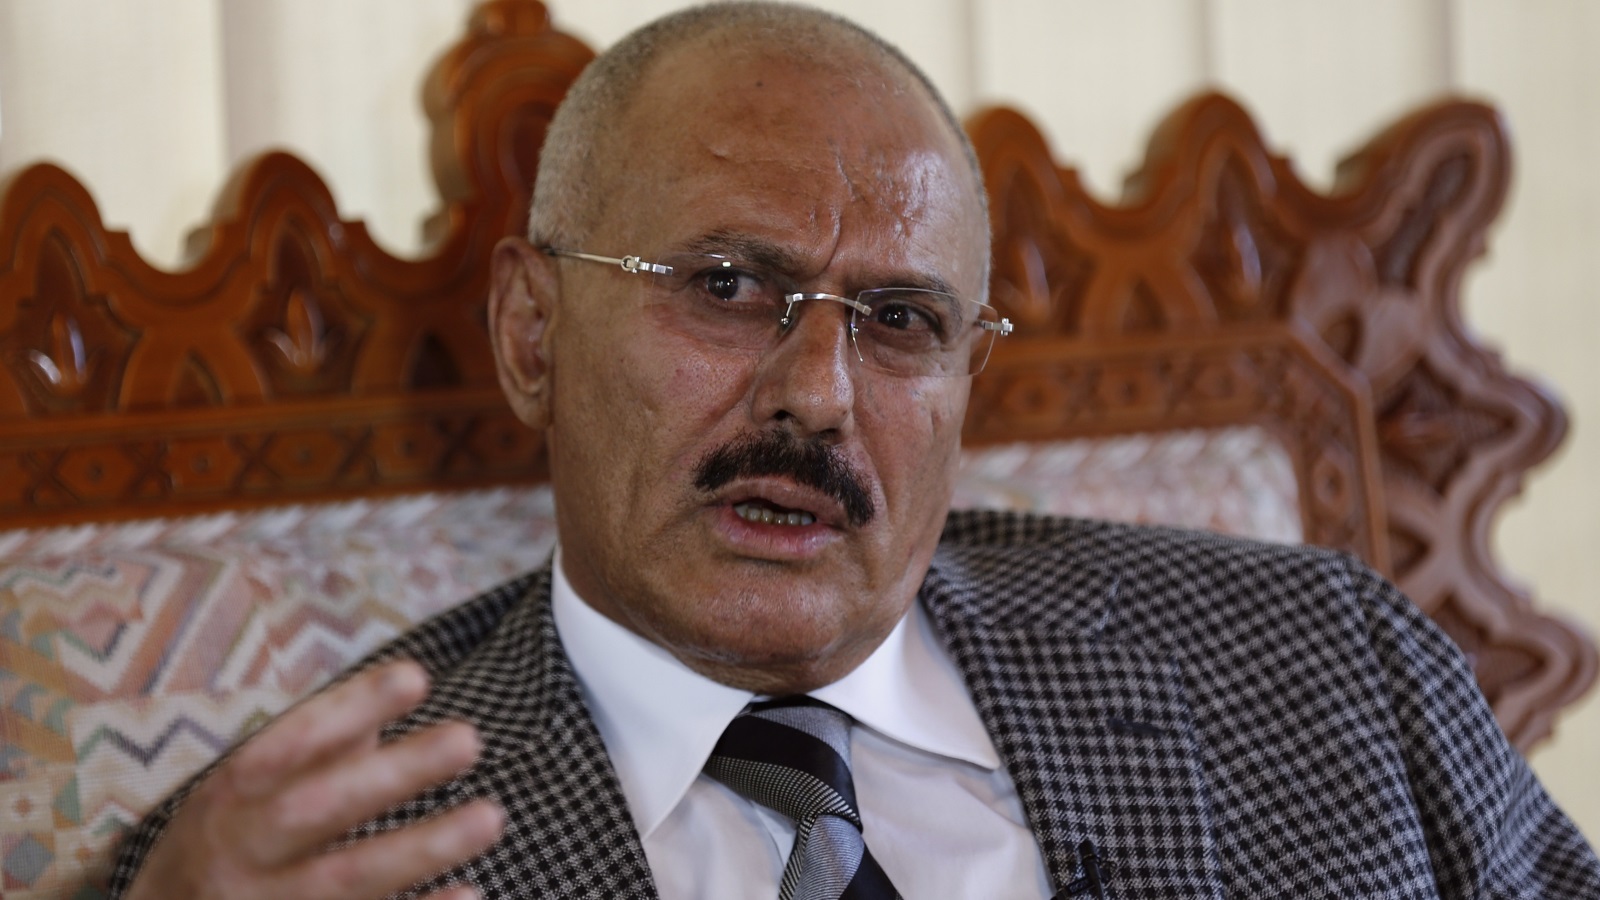 اليوم يعول معارضي صالح والتحالف على رقصة أخرى لصالح على رؤوس حلفائه الحاليين -الحوثيين- باعتباره موهوبا في هذا المجال